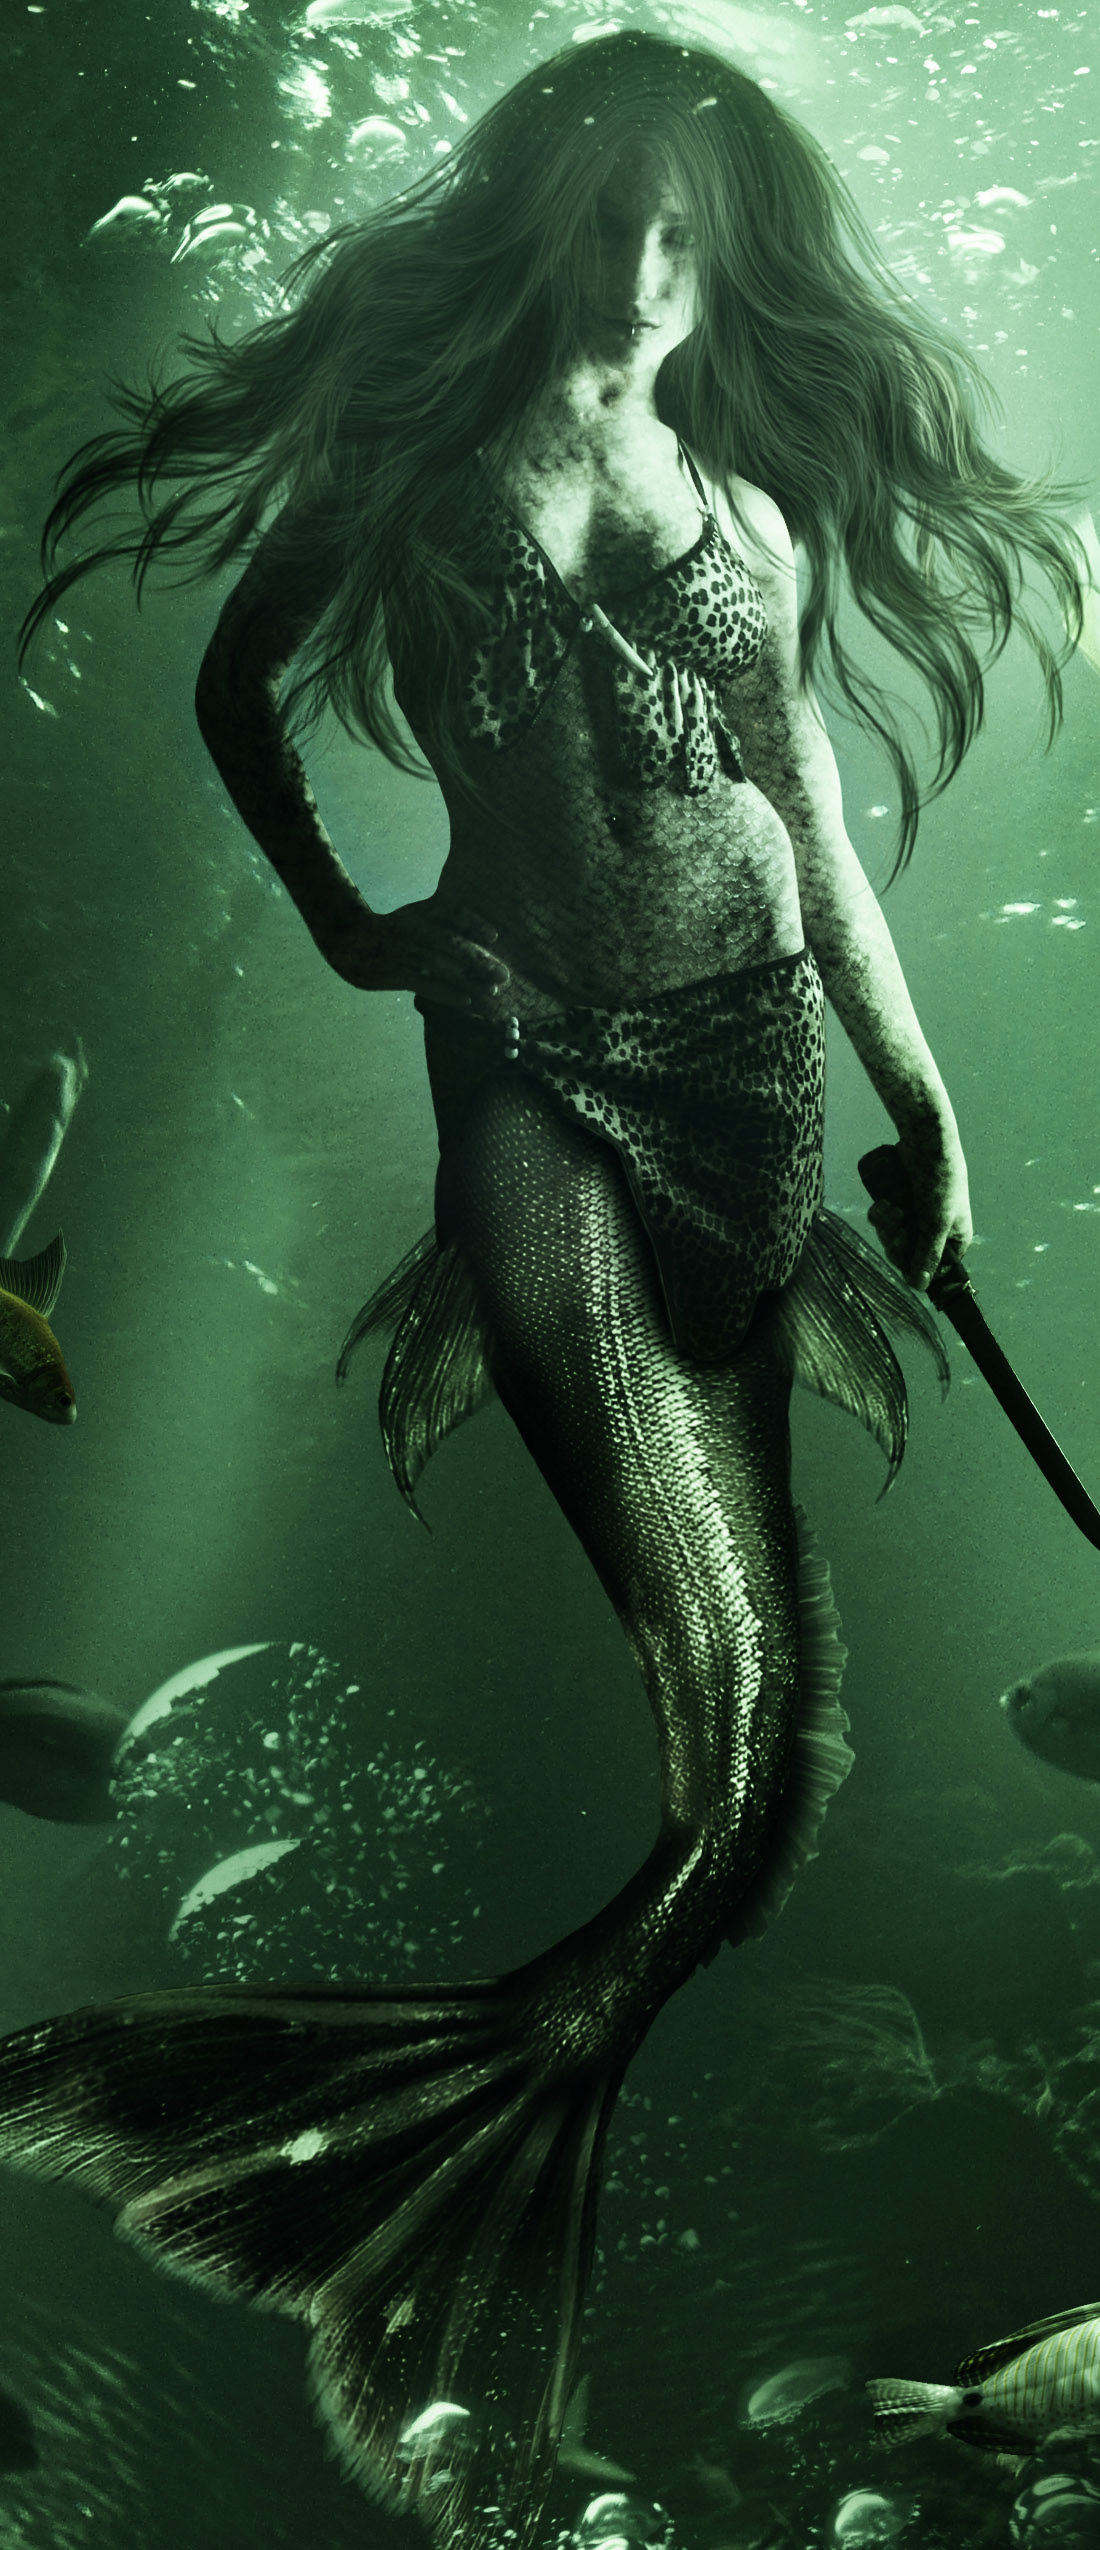 digital photomanipulation siren surreal fantasy Nature UInderwater water fish Ocean mermaid